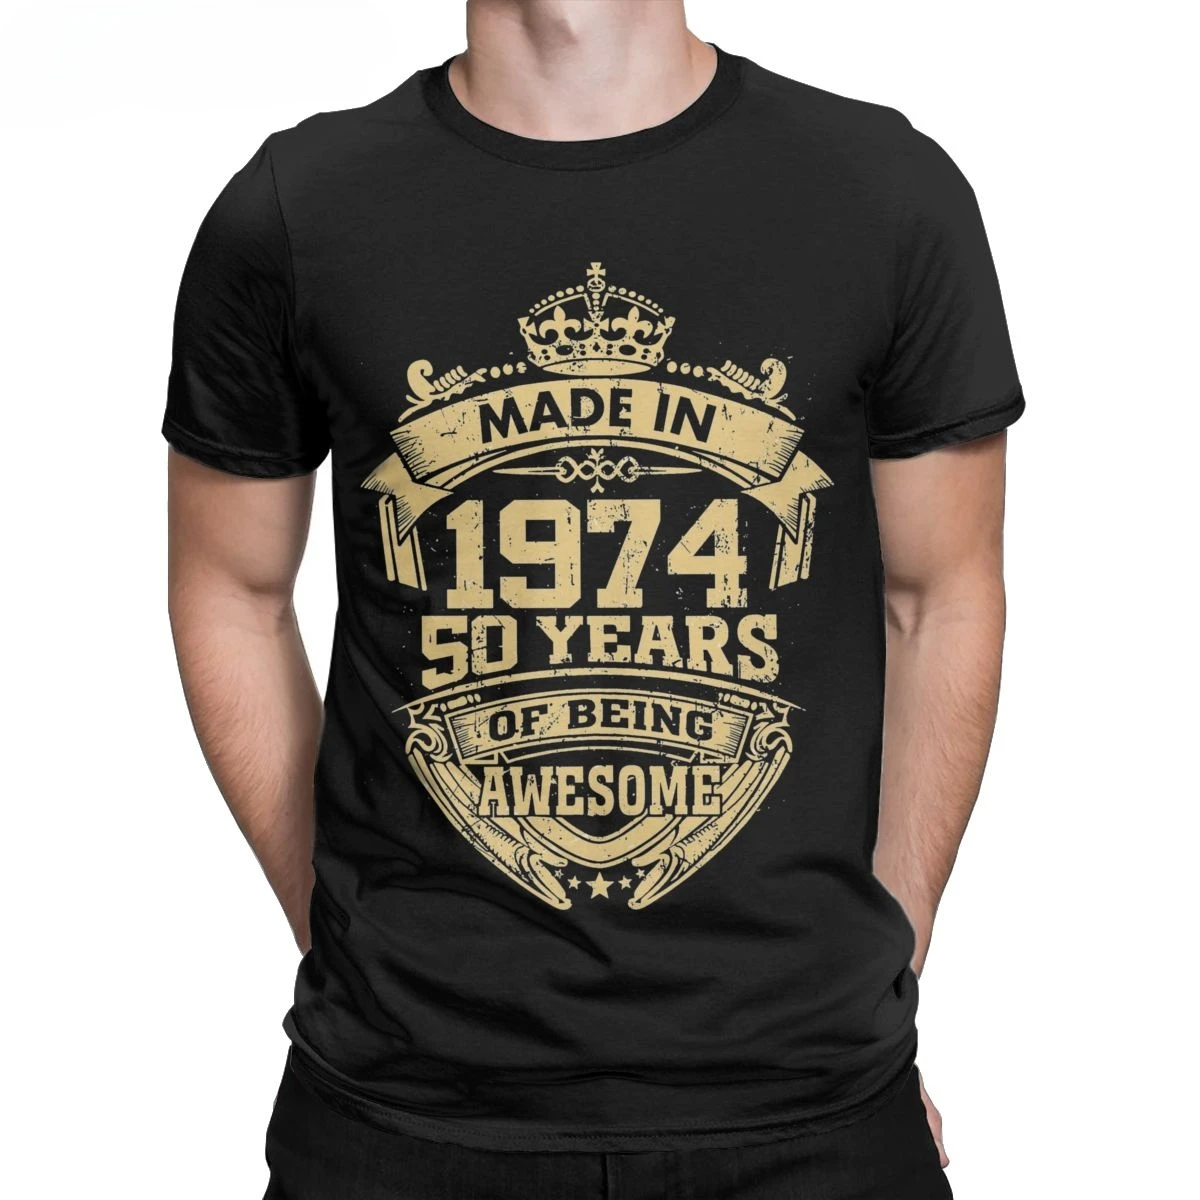 

Футболки, одежда с круглым вырезом, Мужская футболка, сделанная в 1974 году, 50 лет, удивительный юмор, хлопковая футболка, подарок на день рождения